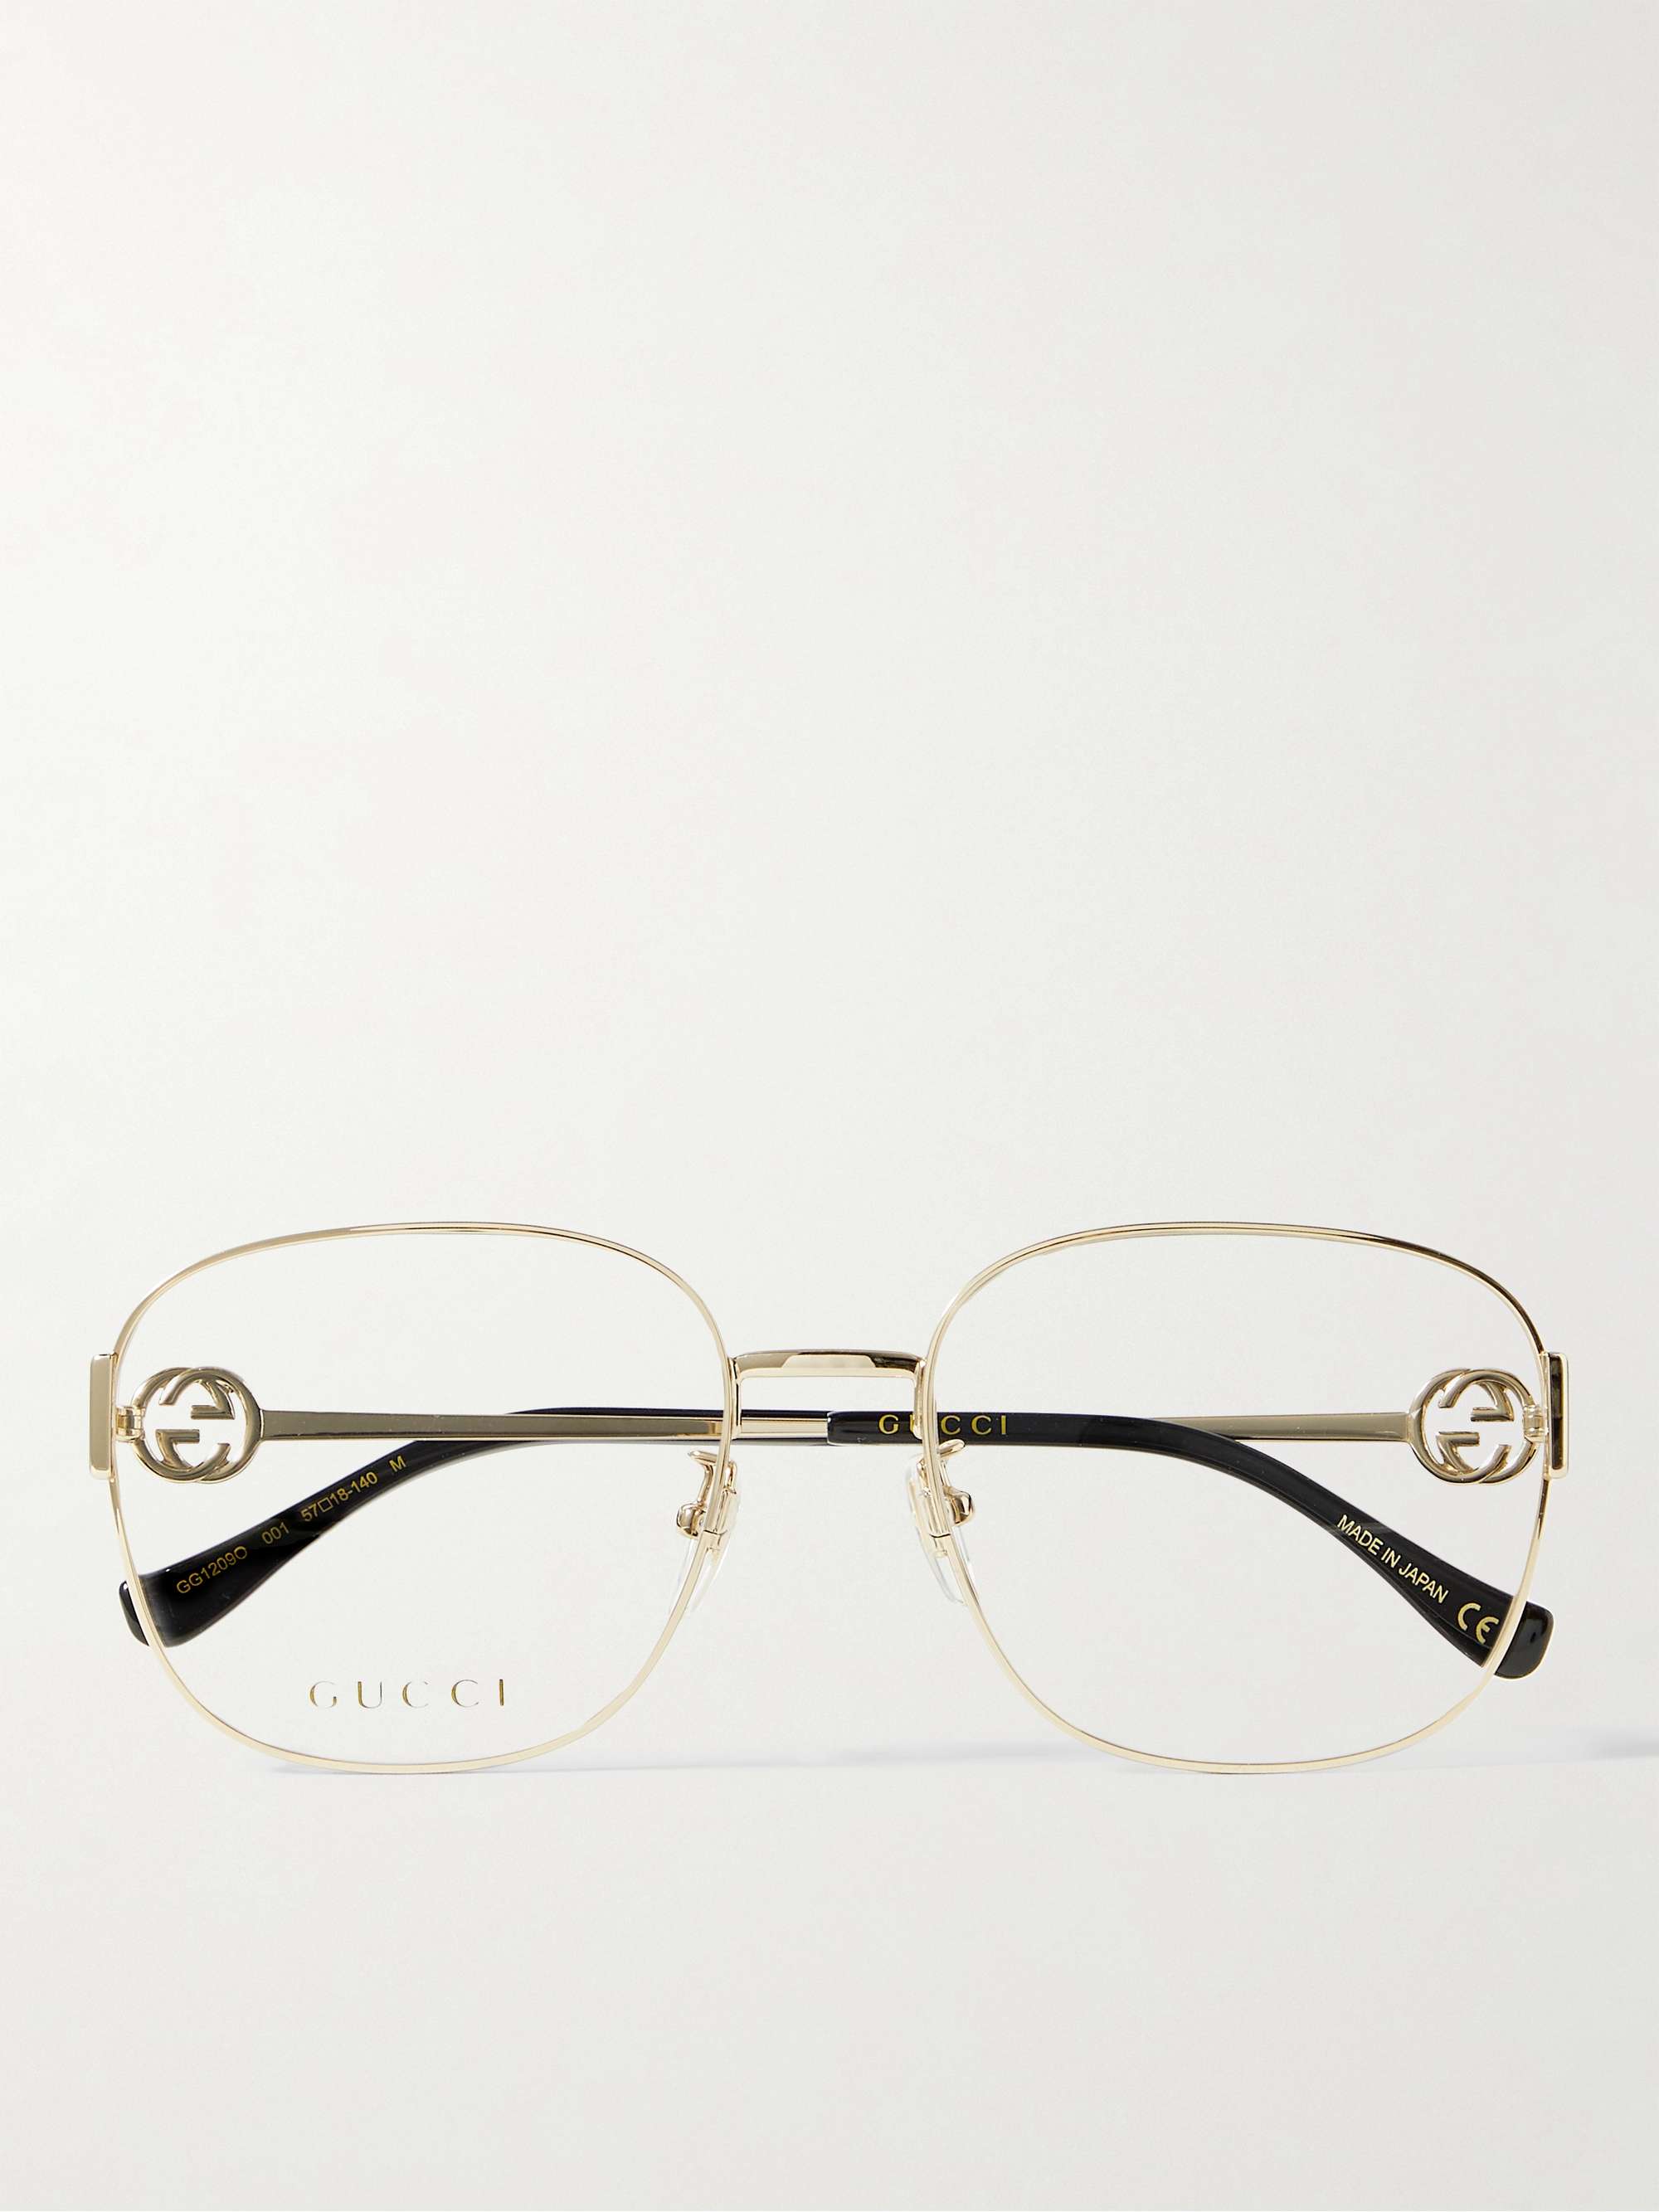 ذهبي نظارات طبية بإطار مربع من معدن ذهبي اللون مزينة بسلسلة | GUCCI EYEWEAR  | MR PORTER